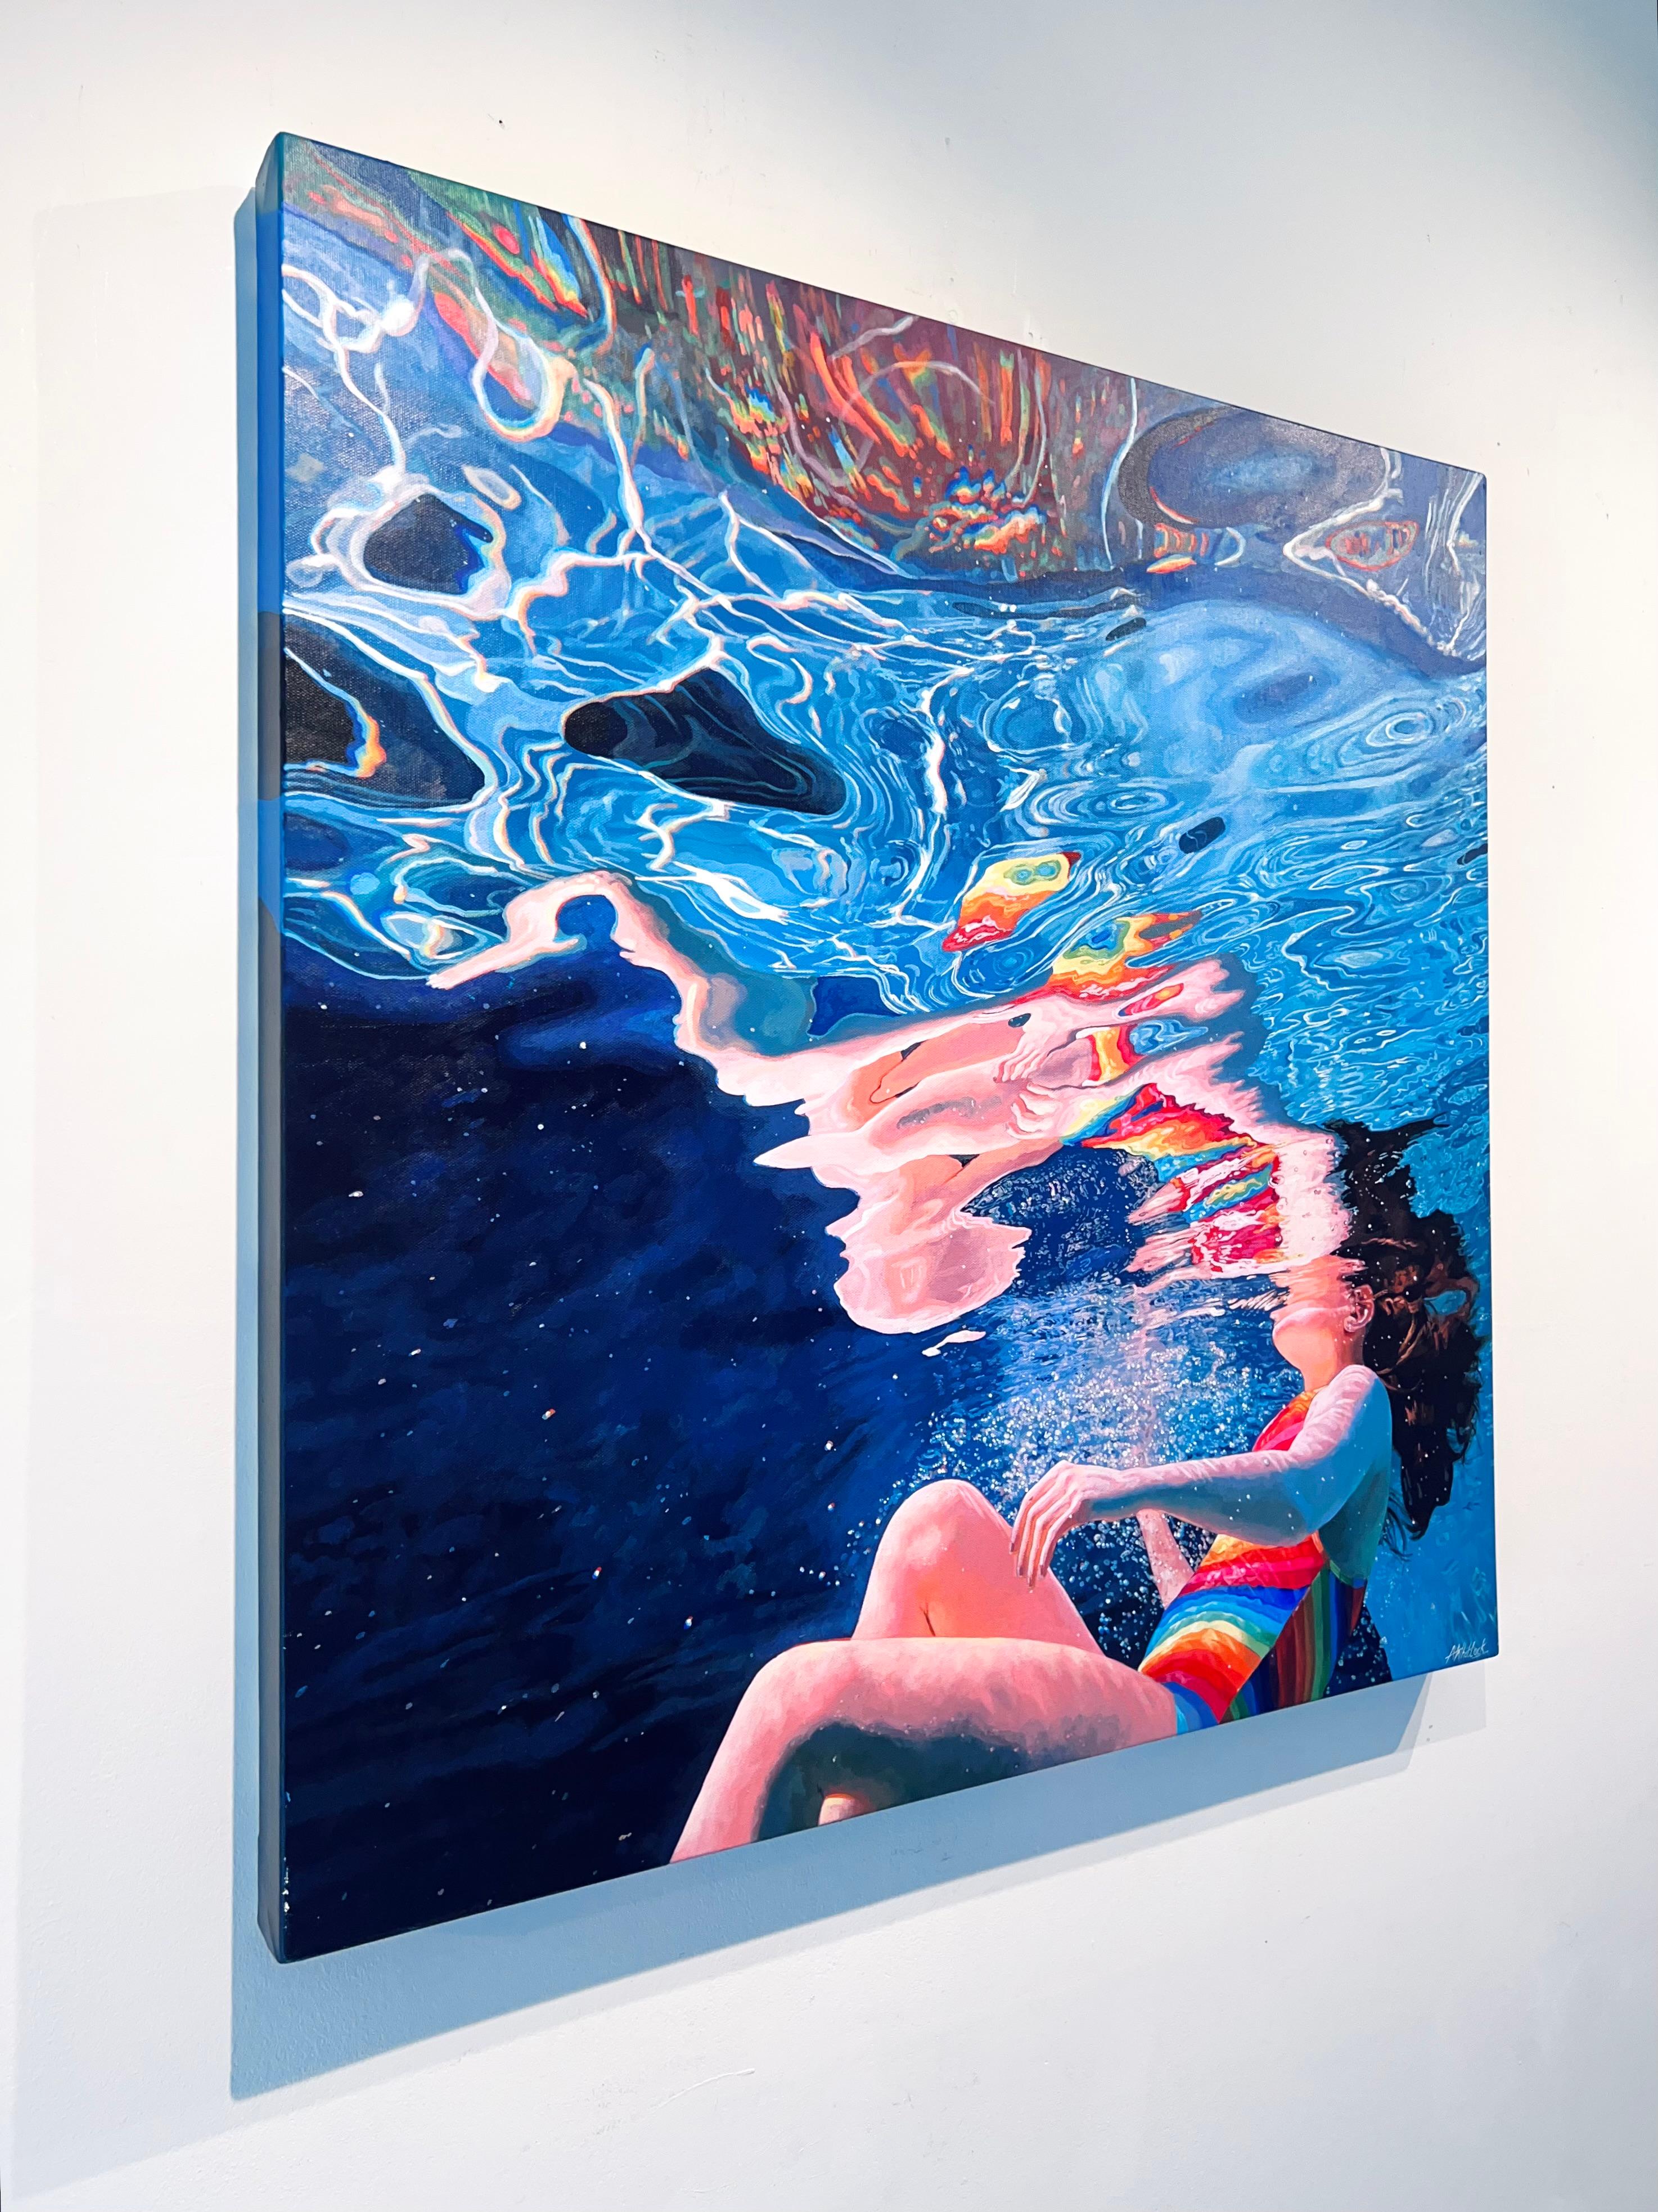 Origine - peinture à l'eau abstraite impressionniste originale - art contemporain  - Impressionnisme Painting par Abi Whitlock